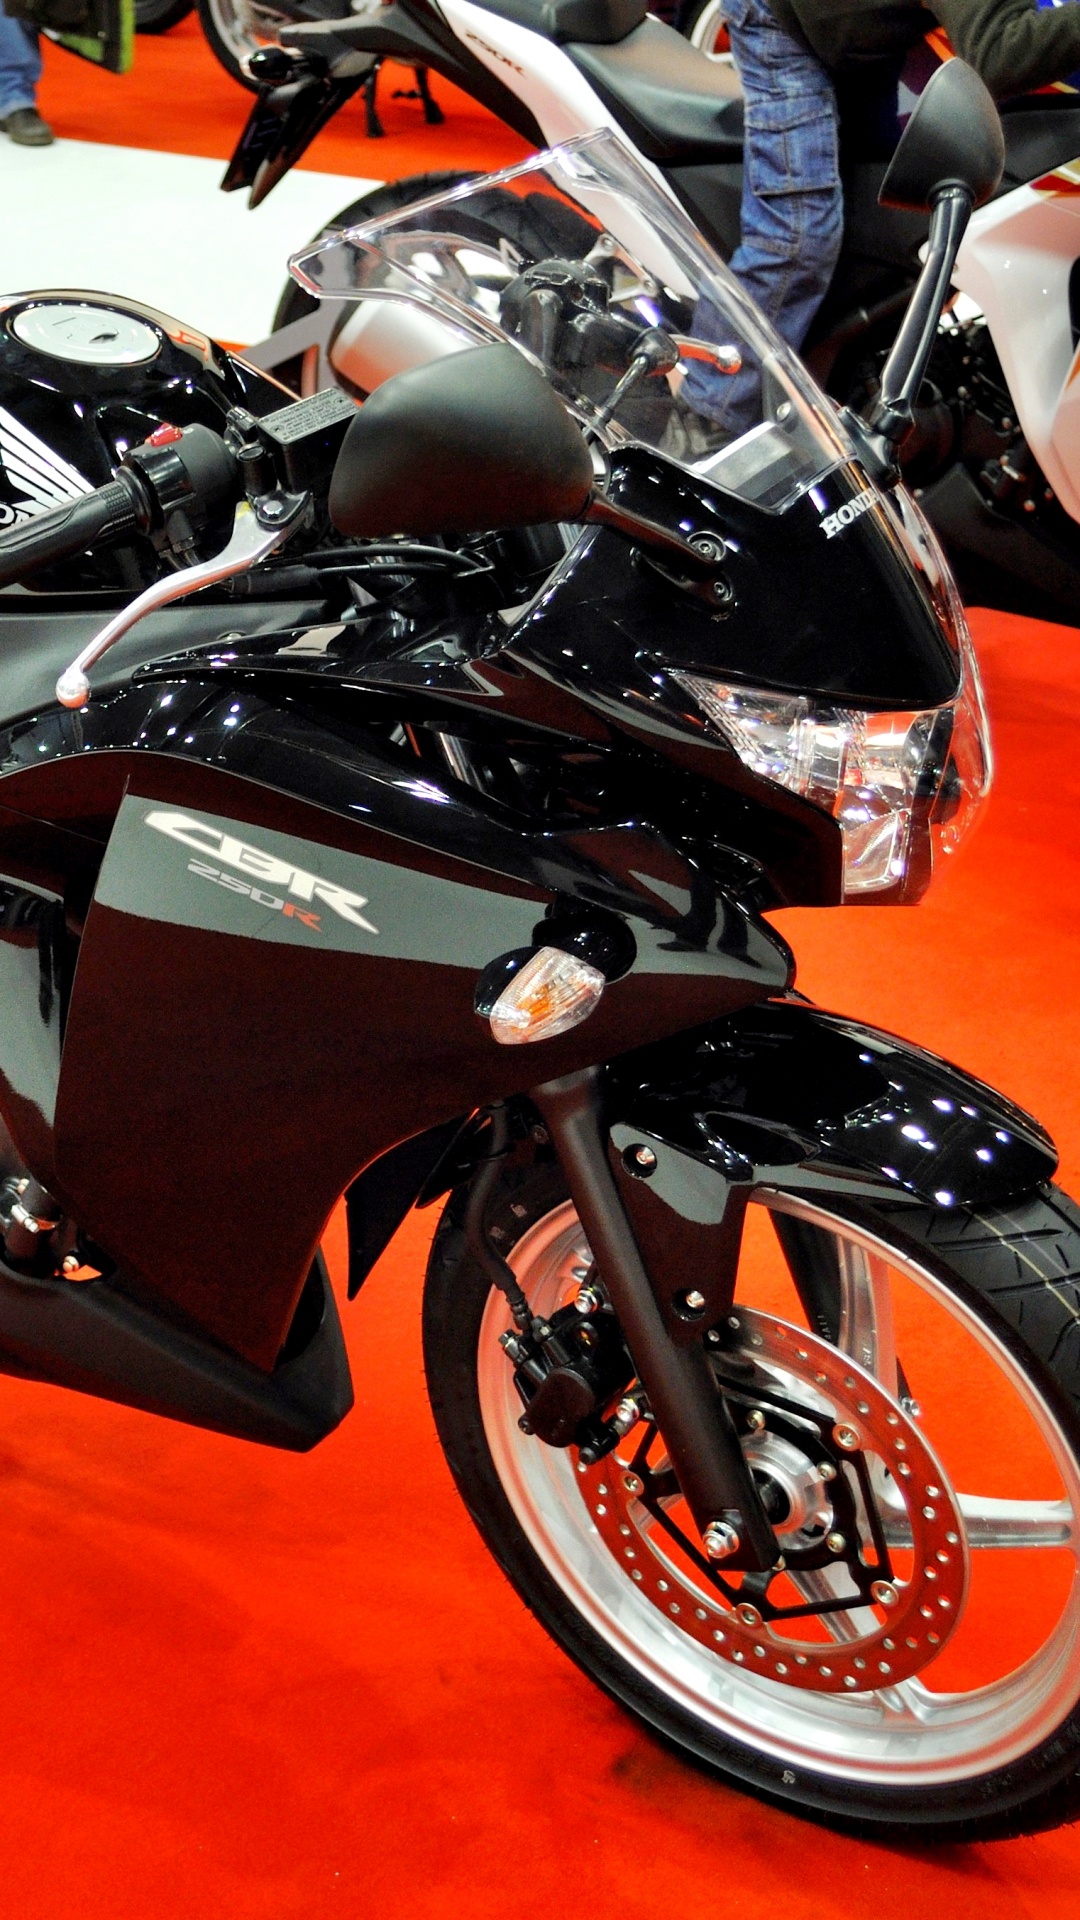 本田汽车公司, 本田cbr250r, 自行车运动, 摩托车配件, 摩托车的纪念品 壁纸 1080x1920 允许